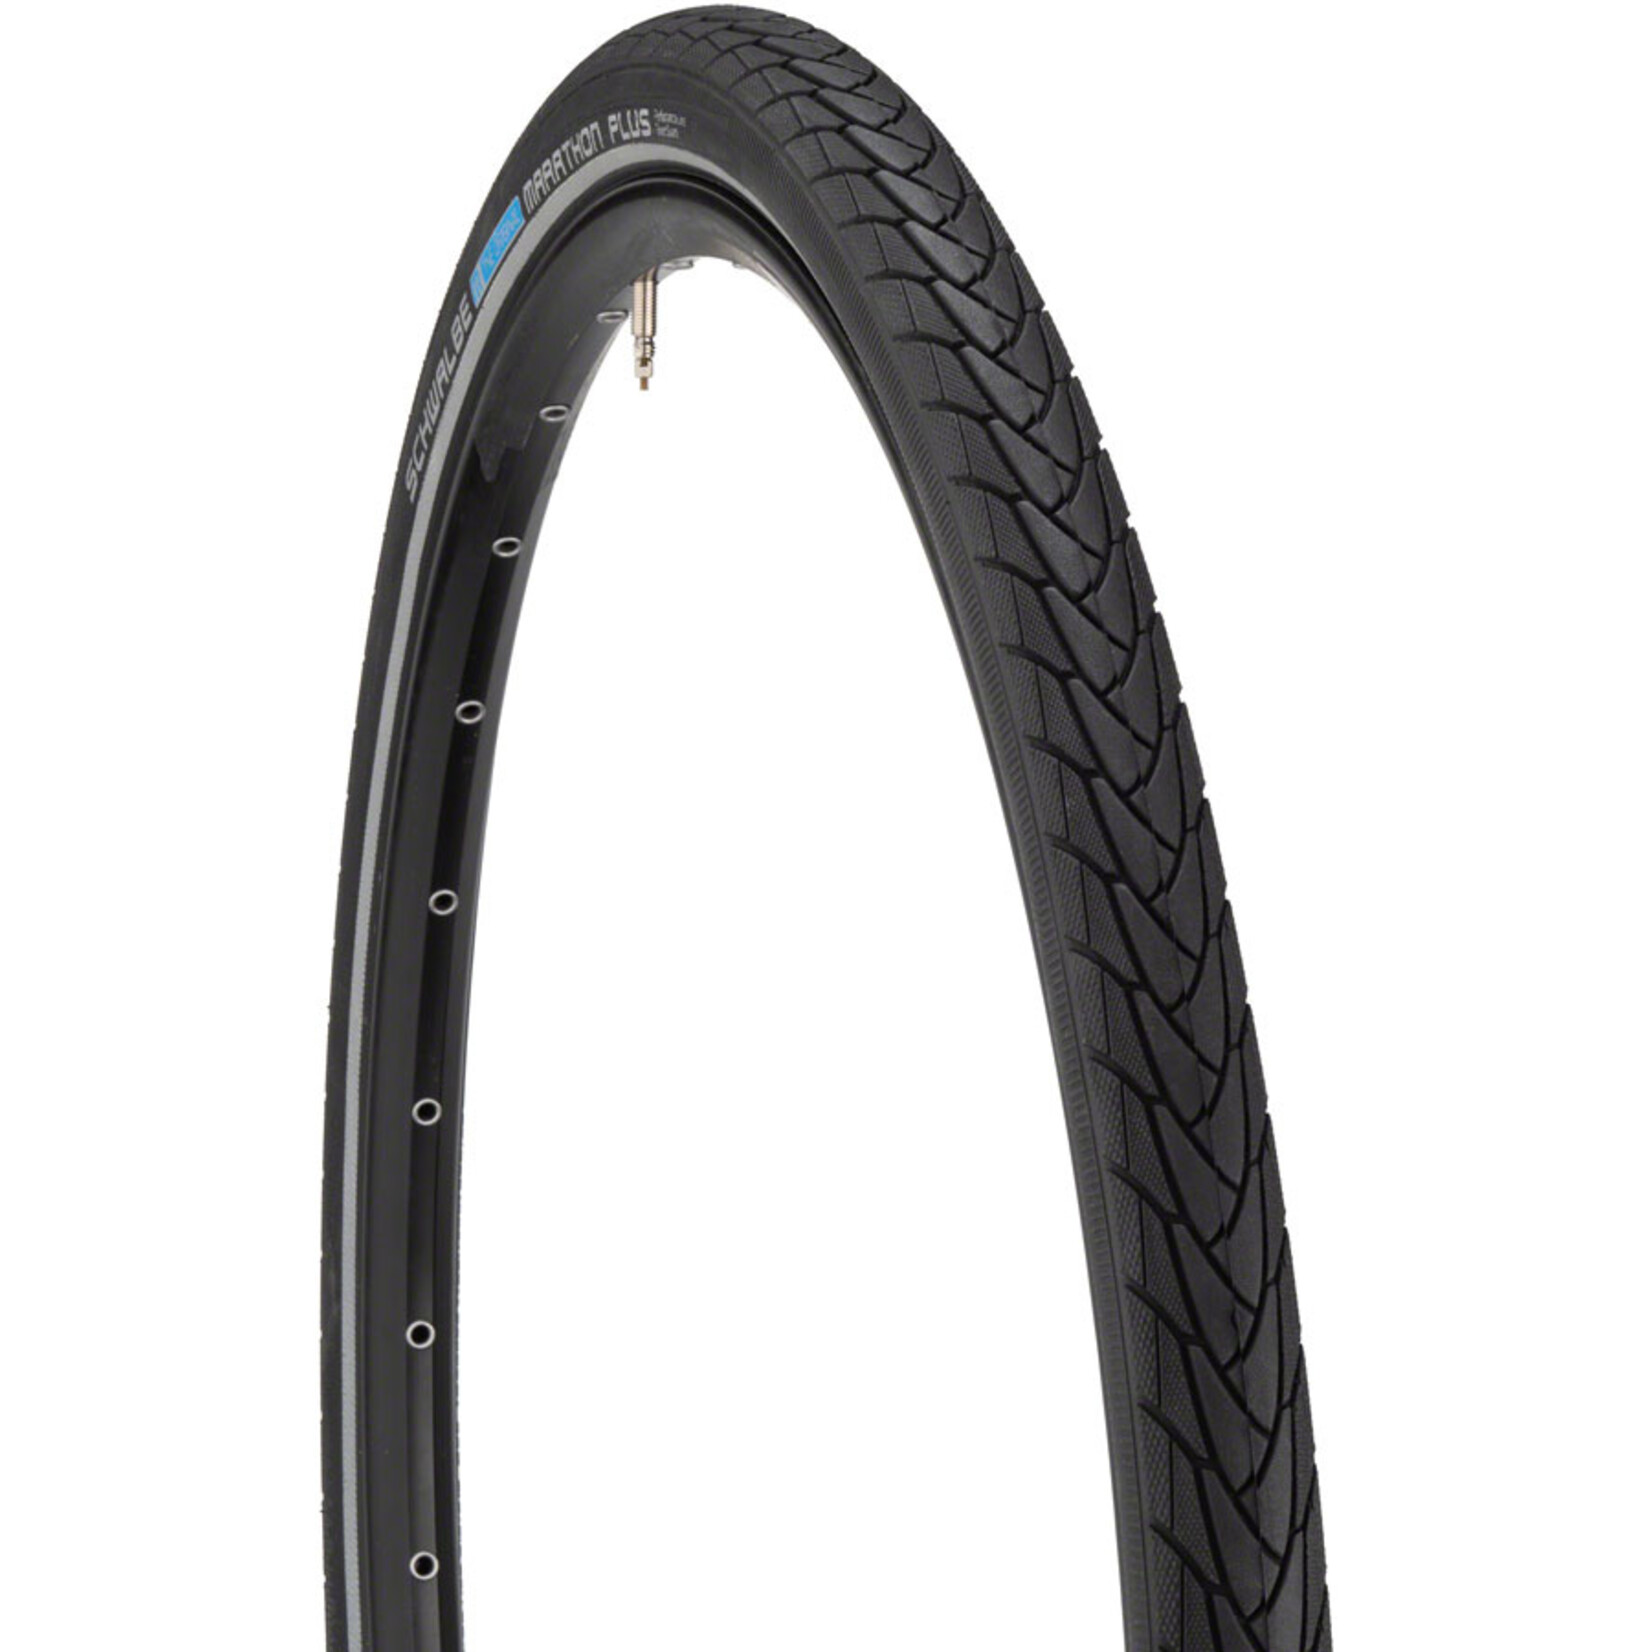 Schwalbe Schwalbe Marathon Plus Tire - 700 x 38 Clincher Wire Black/Reflective Performance Line